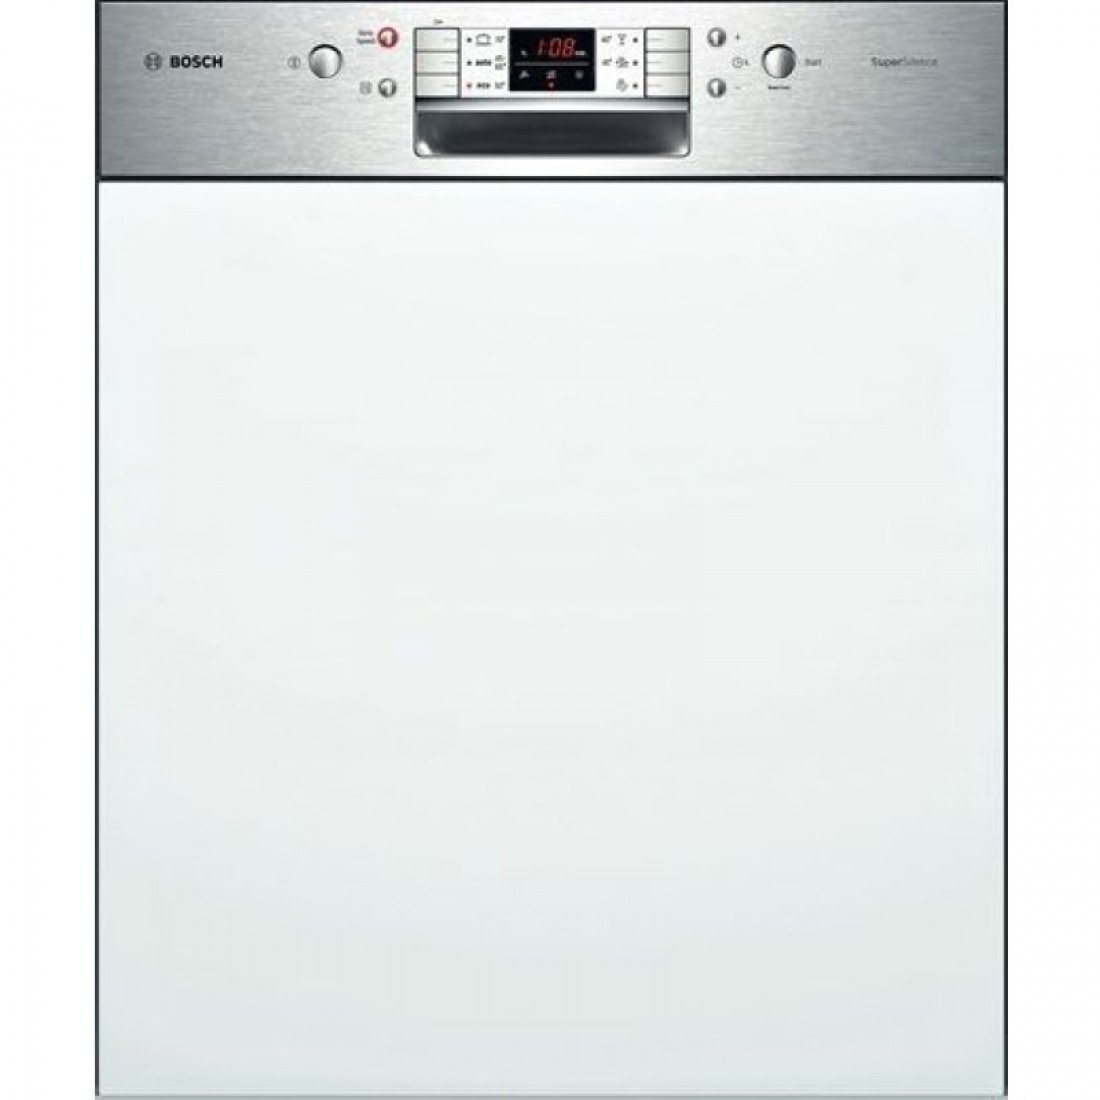 Посудомоечная машина Siemens SN 536s01 ke. Посудомоечная машина Bosch SMI 40m65. Bosch SMI 46ks00 t. Посудомоечная машина Bosch SMI 46ks01 e. Купить посудомоечную машину 45 см бош